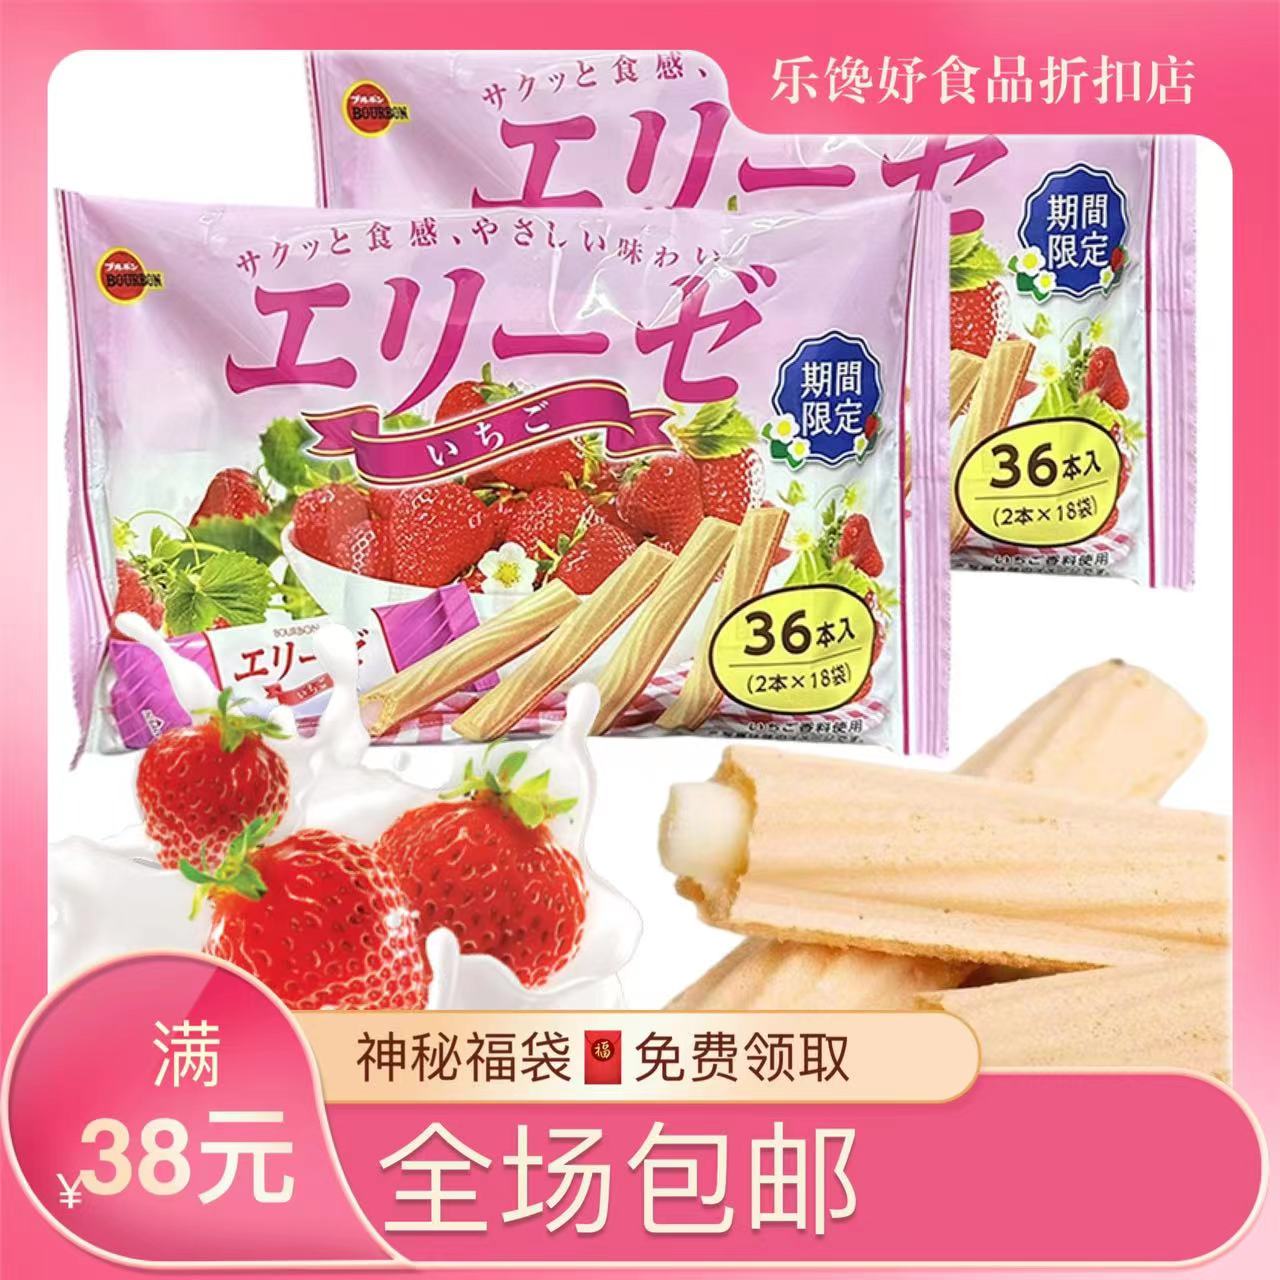 临期特价草莓季日本布尔本BOURBON限定炼乳注心蛋卷威化棒36枚